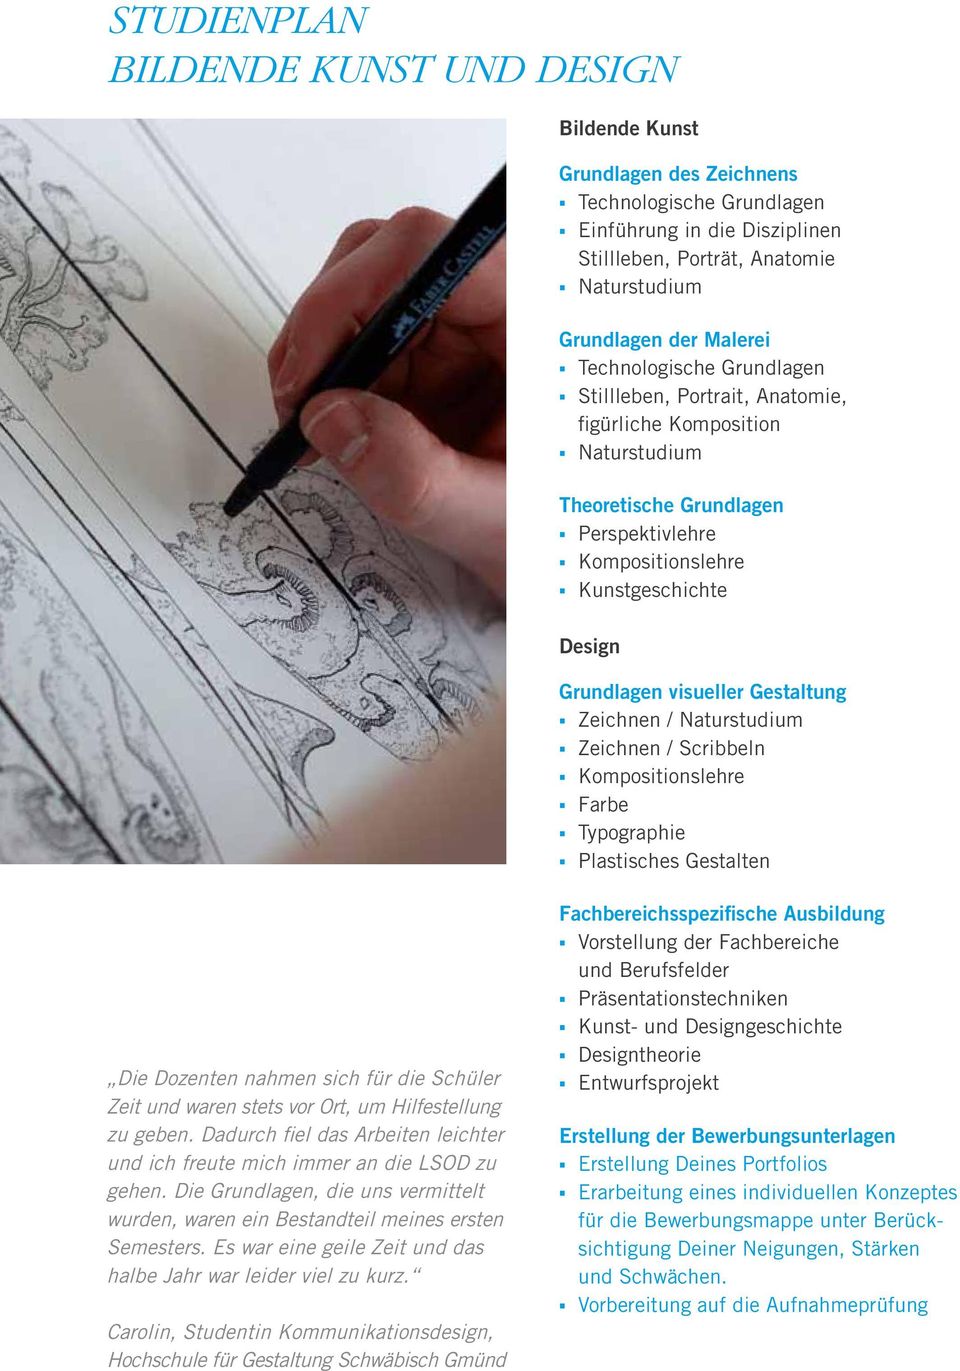 Kunstgeschichte Design Grundlagen visueller Gestaltung. Zeichnen / Naturstudium. Zeichnen / Scribbeln. Kompositionslehre. Farbe. Typographie.